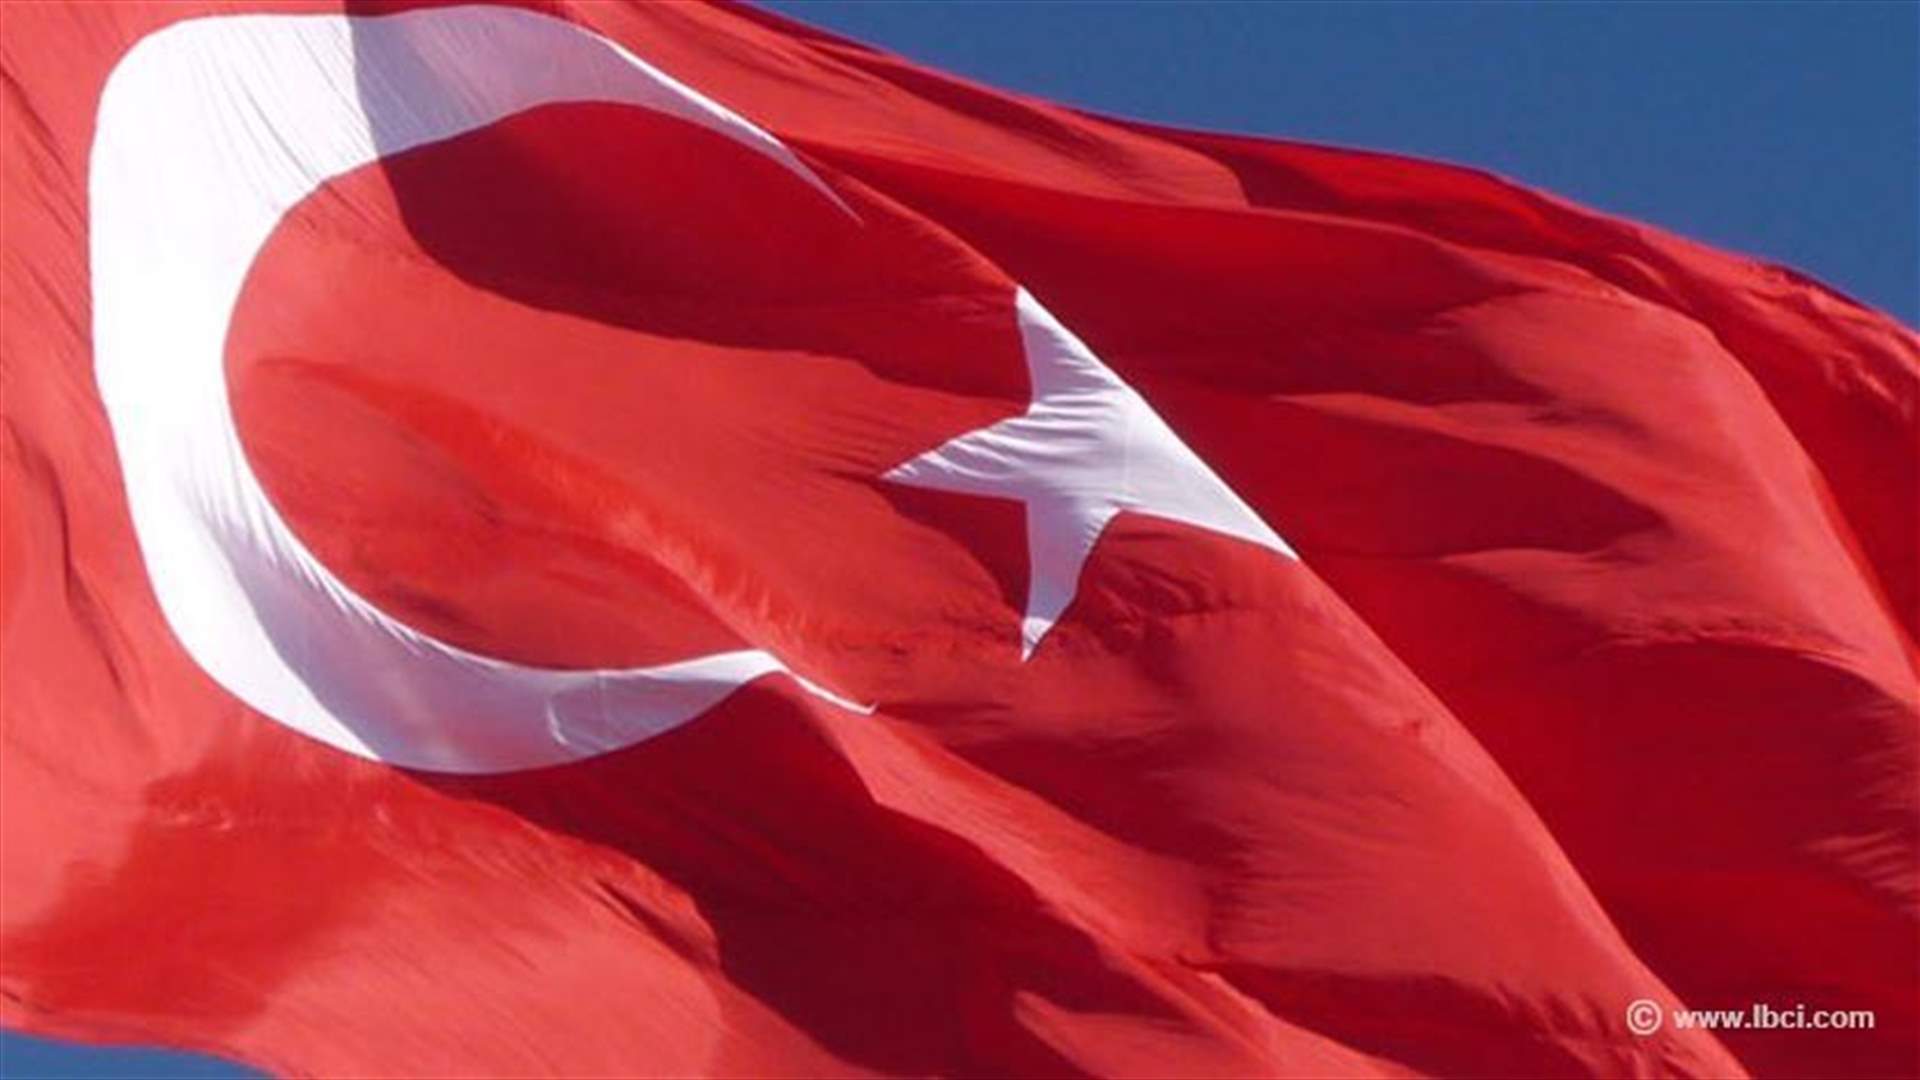 تركيا تمدد تفويض ارسال قوات إلى سوريا عاما عند الضرورة